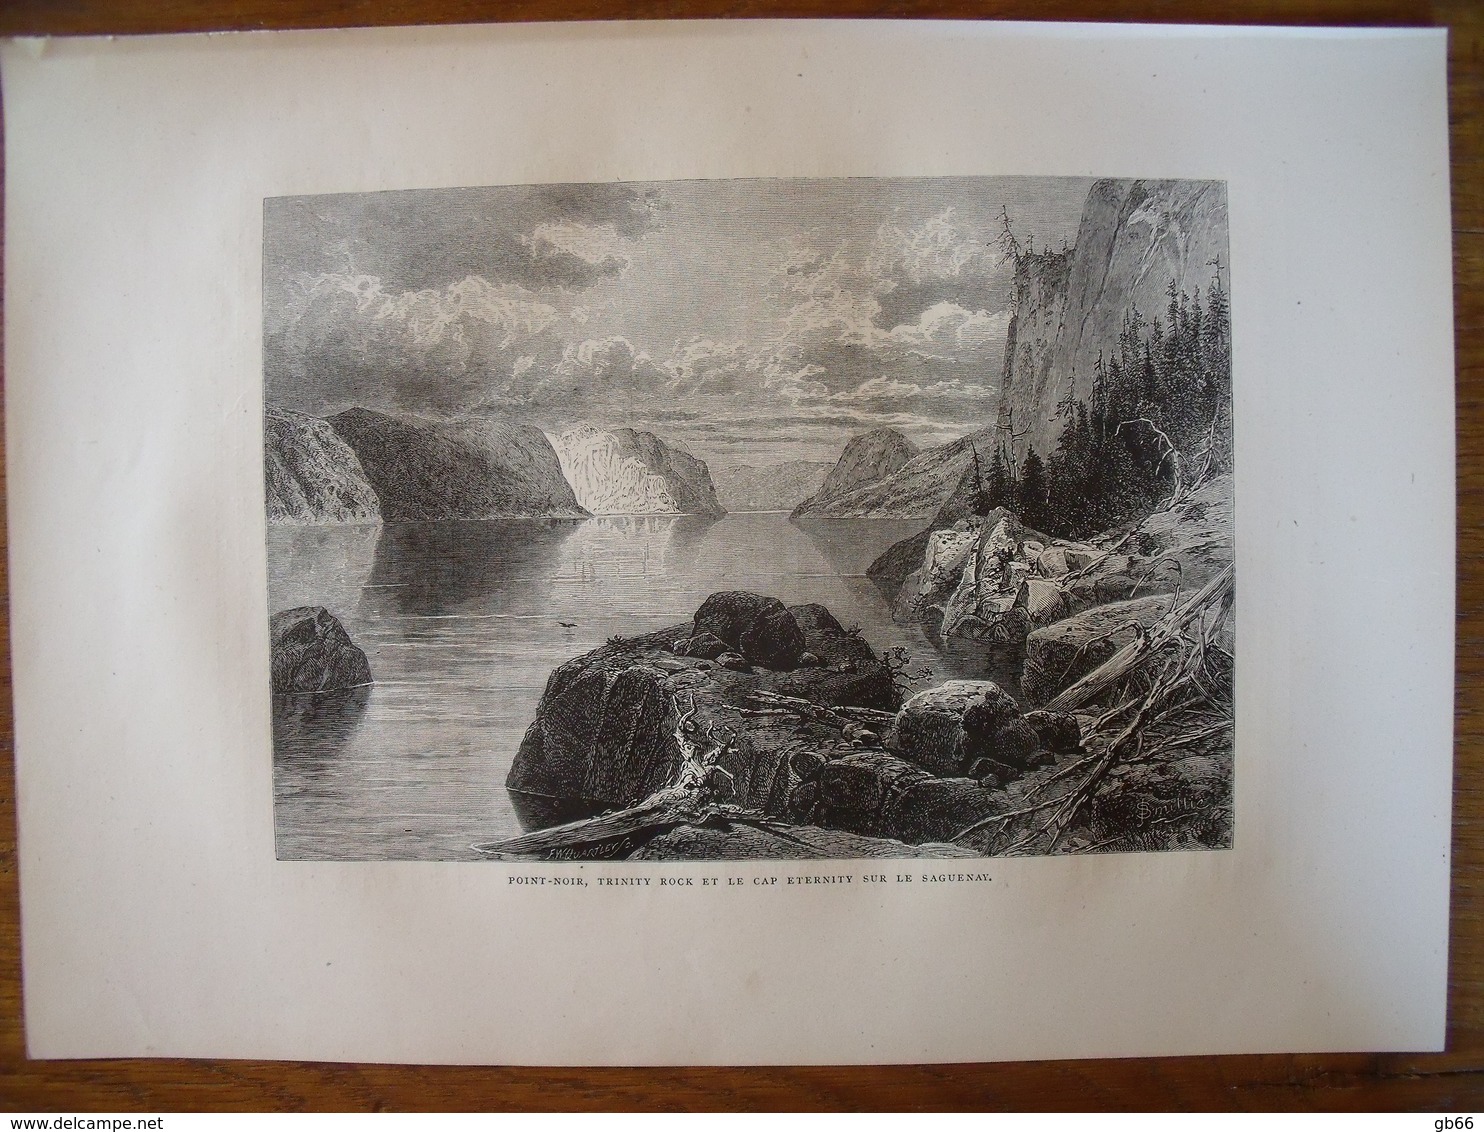 Canada, Point-Noir, Trinity Rock, Cap Eternity, Sur Le Saguenay   Gravure    1880 - Collections